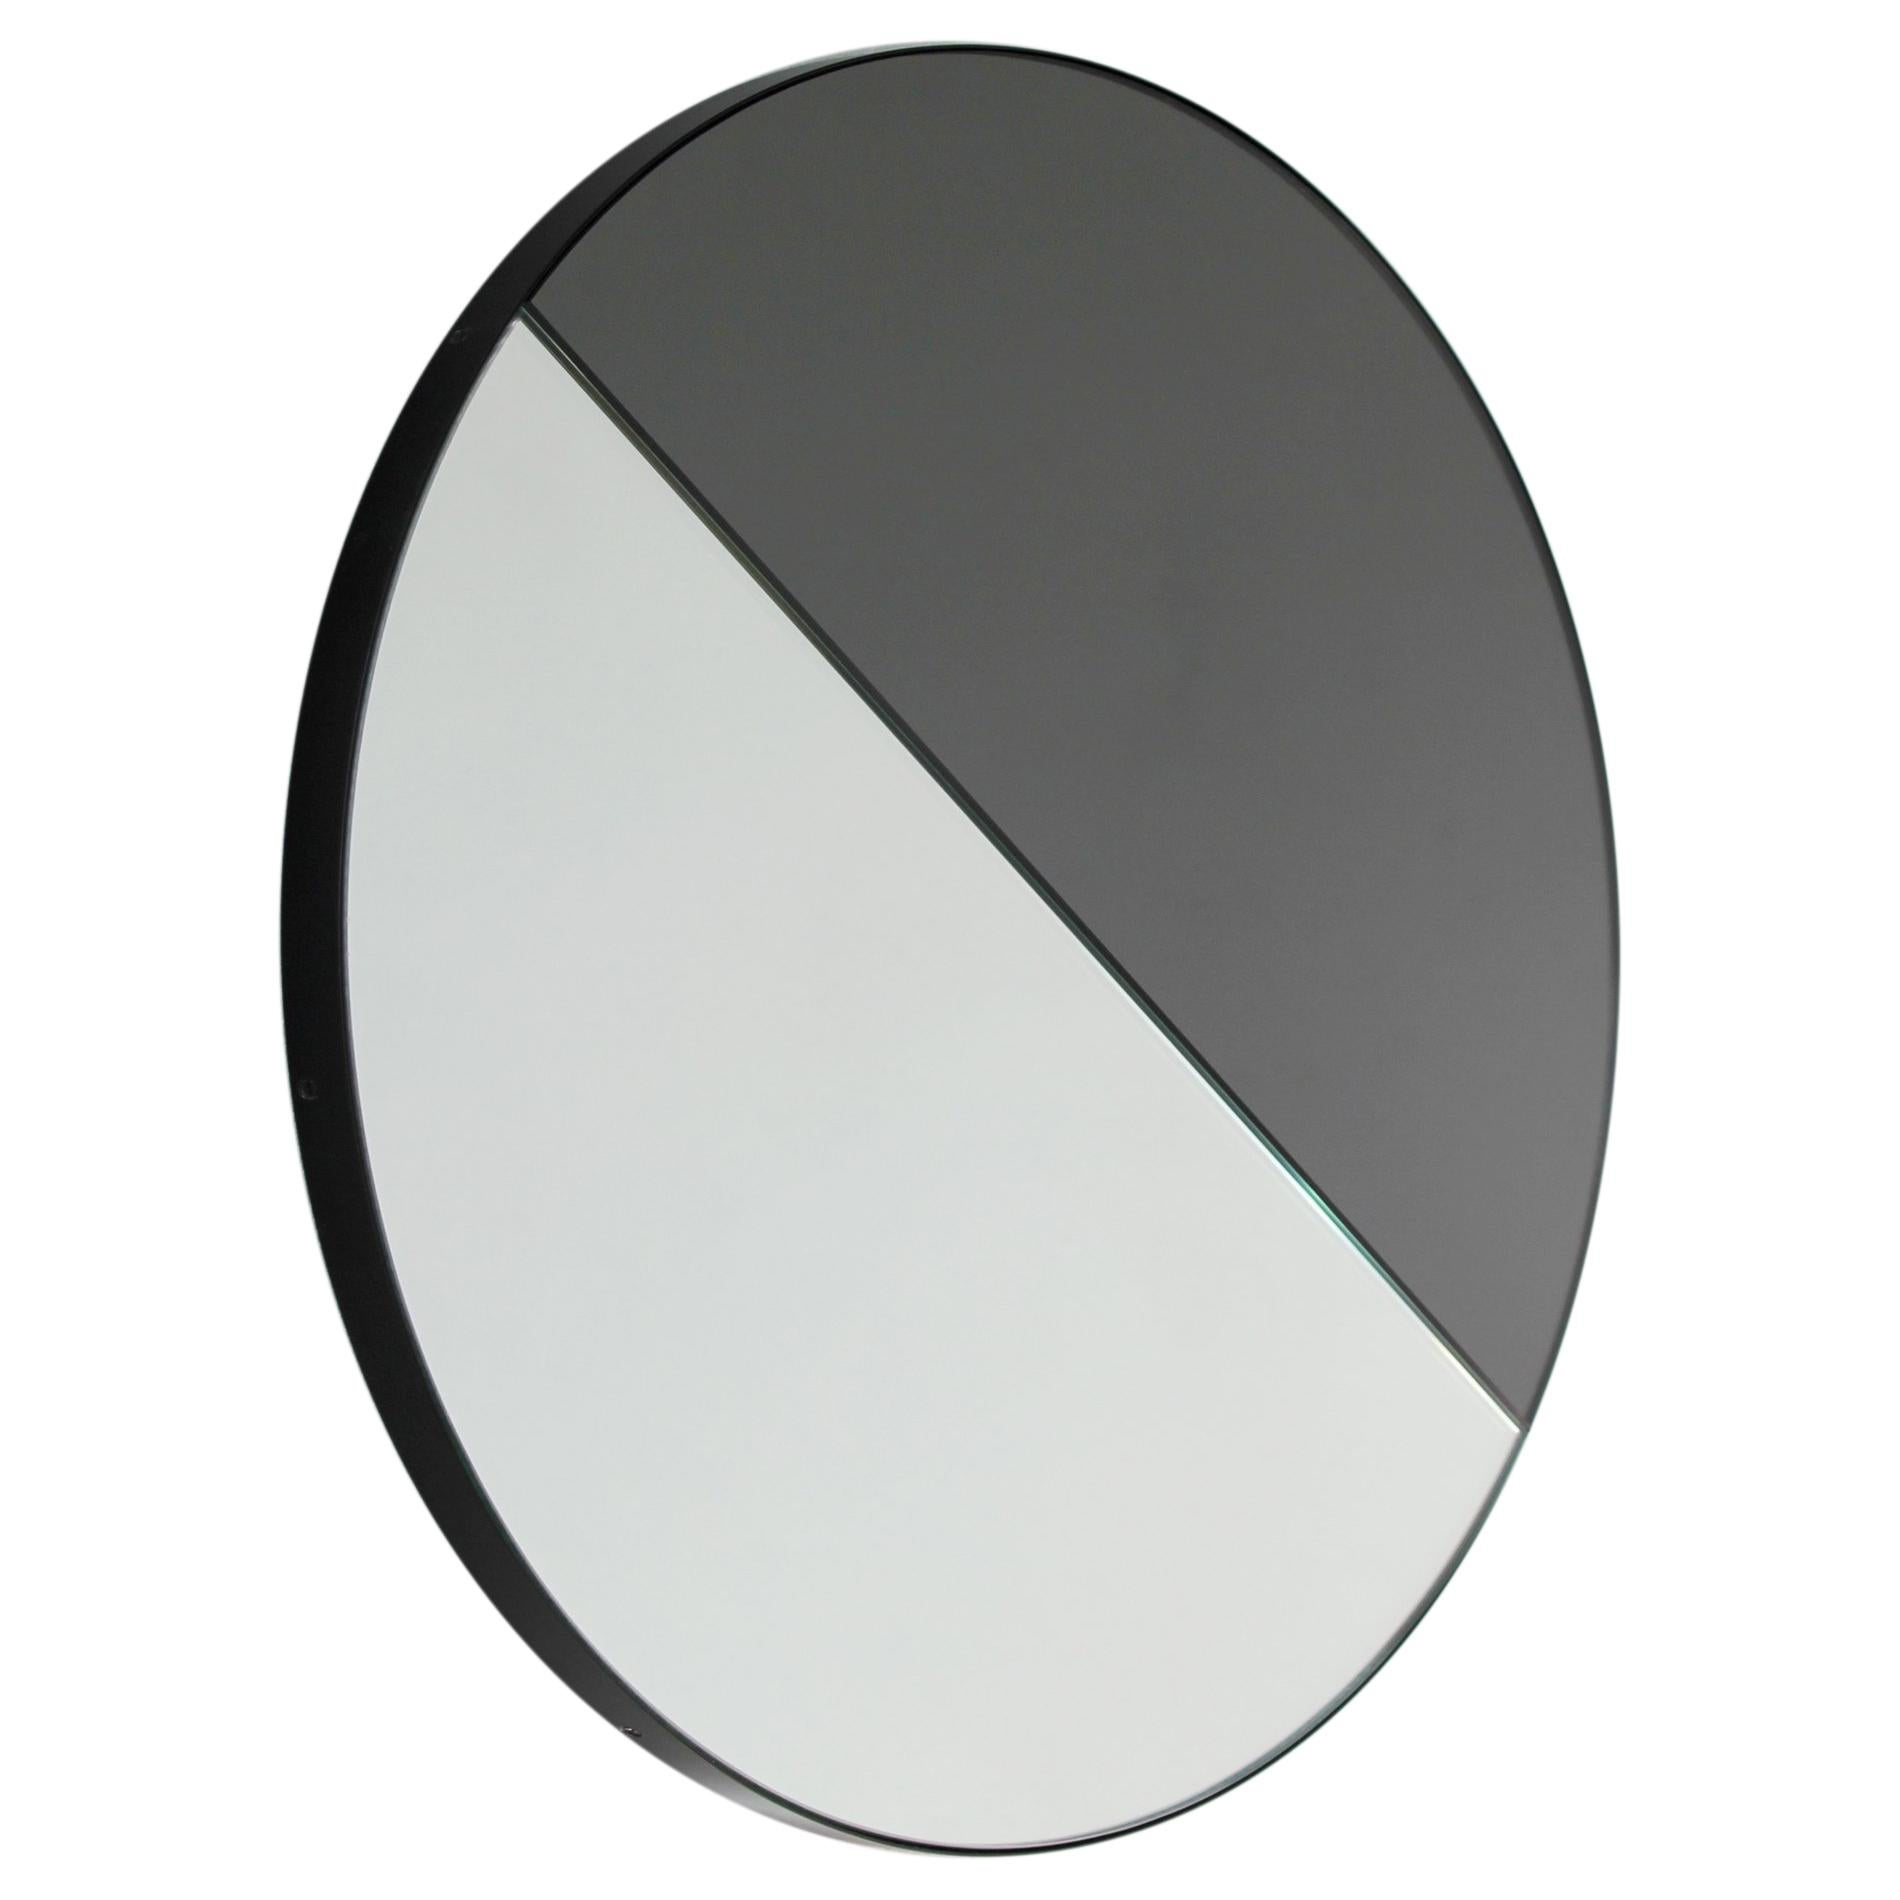 Orbis Dualis Gemischter Farbton Zeitgenössischer runder Spiegel mit schwarzem Rahmen, XL